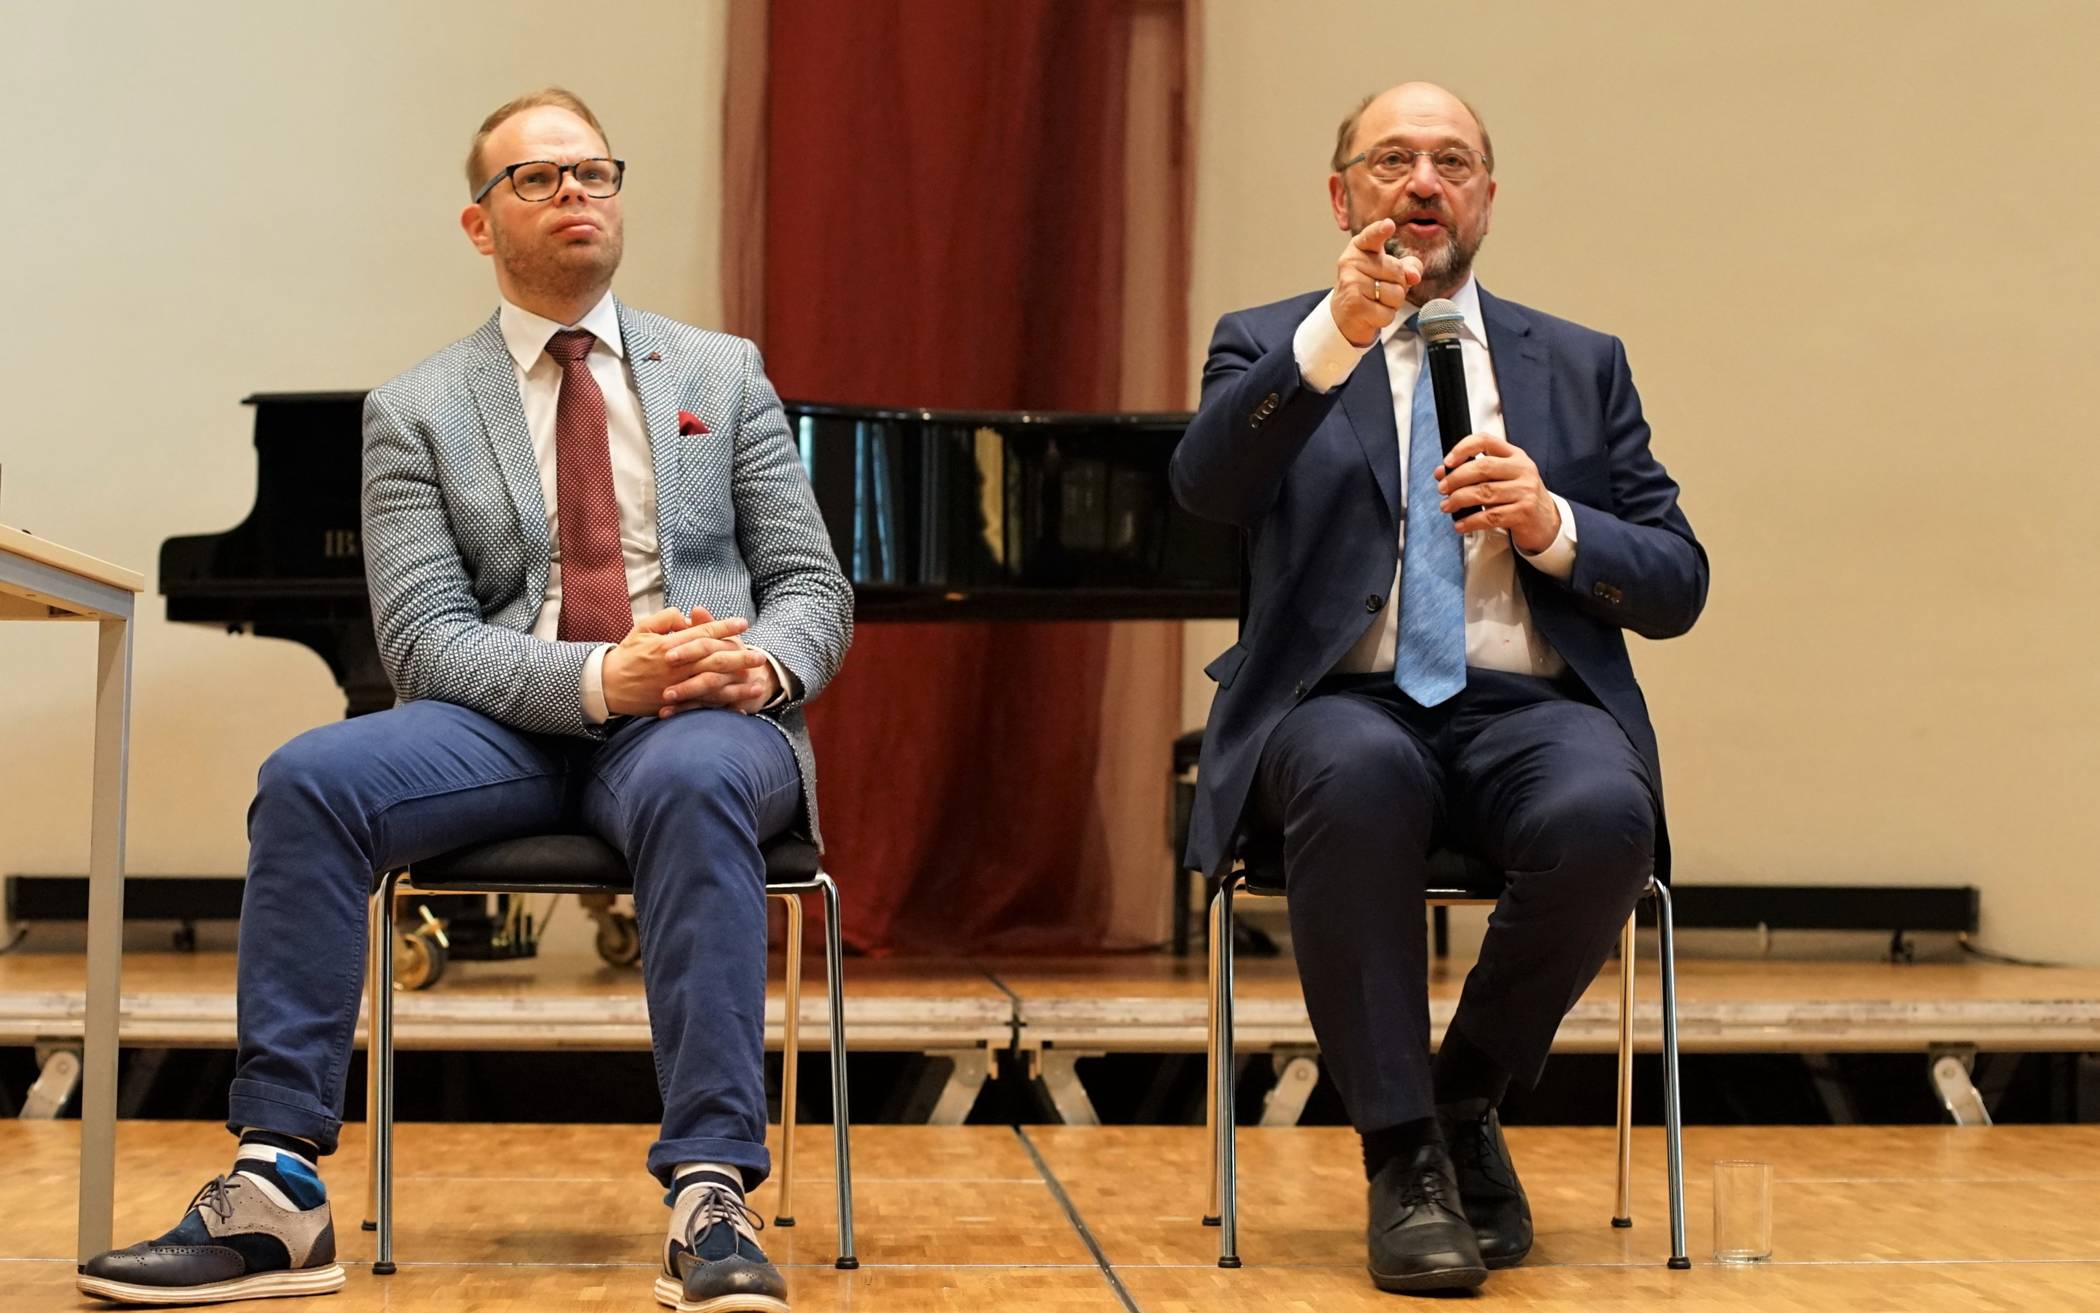  Helge Lindh (li.) bei einer Diskussionsveranstaltung in Wuppertal mit Martin Schulz, der 2017 Kanzlerkandidat der SPD war. 